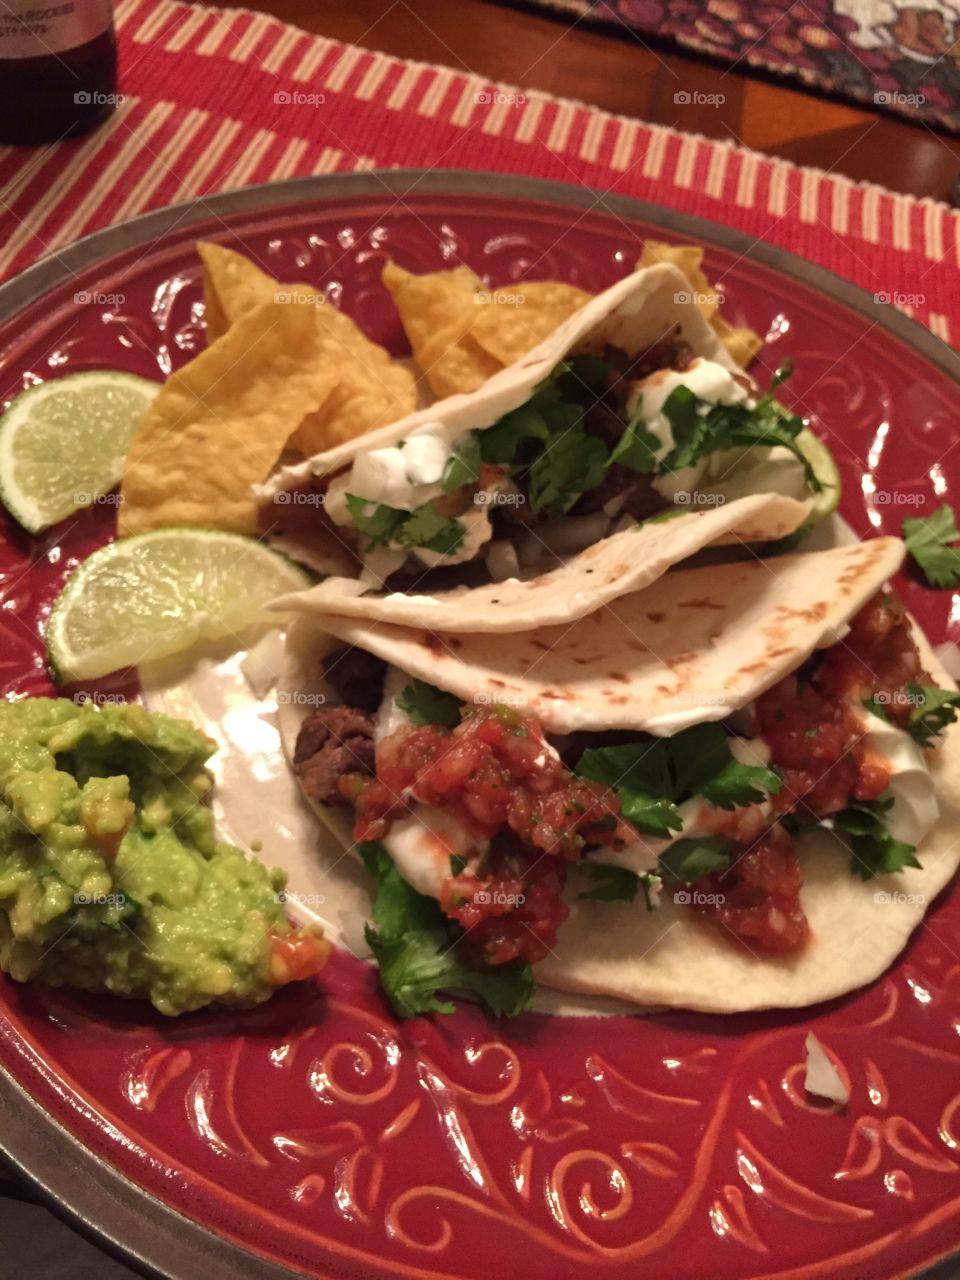 Taco Tuesday . Homemade tacos 